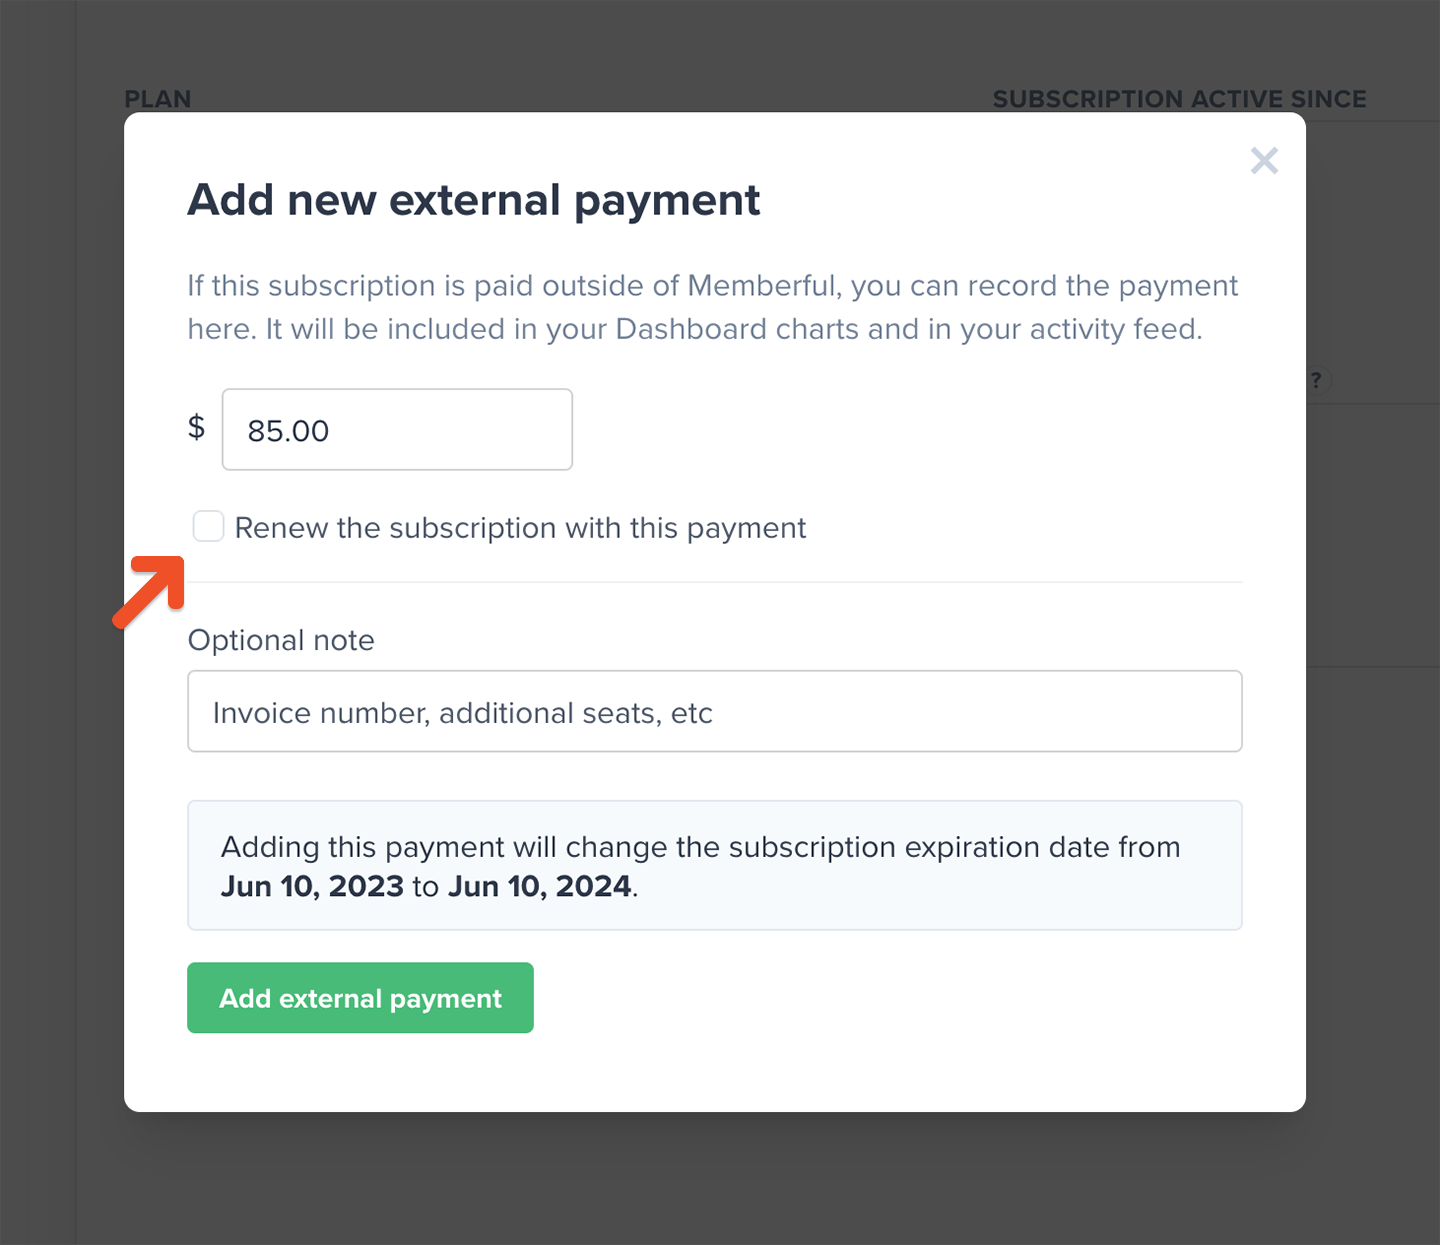 Adding an external payment